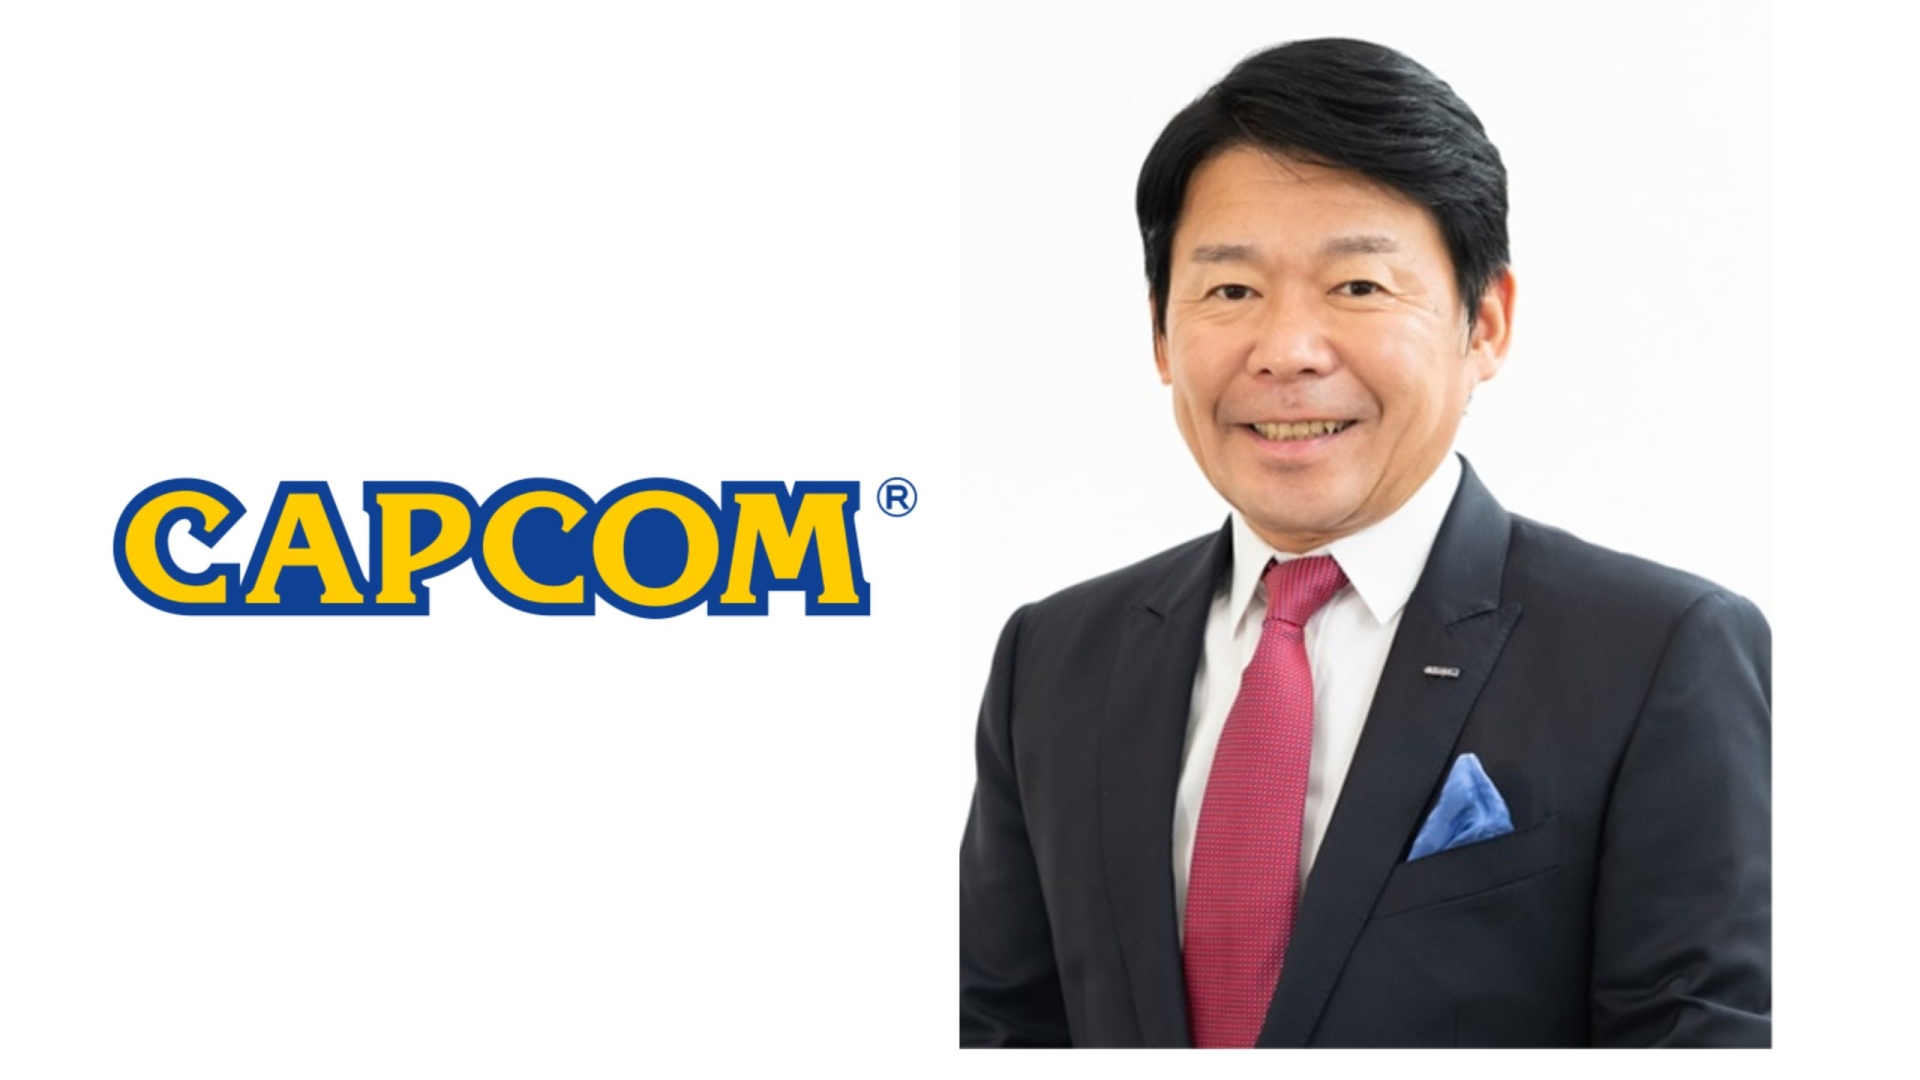 Secondo il CEO di Capcom il prezzo dei videogiochi sarebbe troppo basso